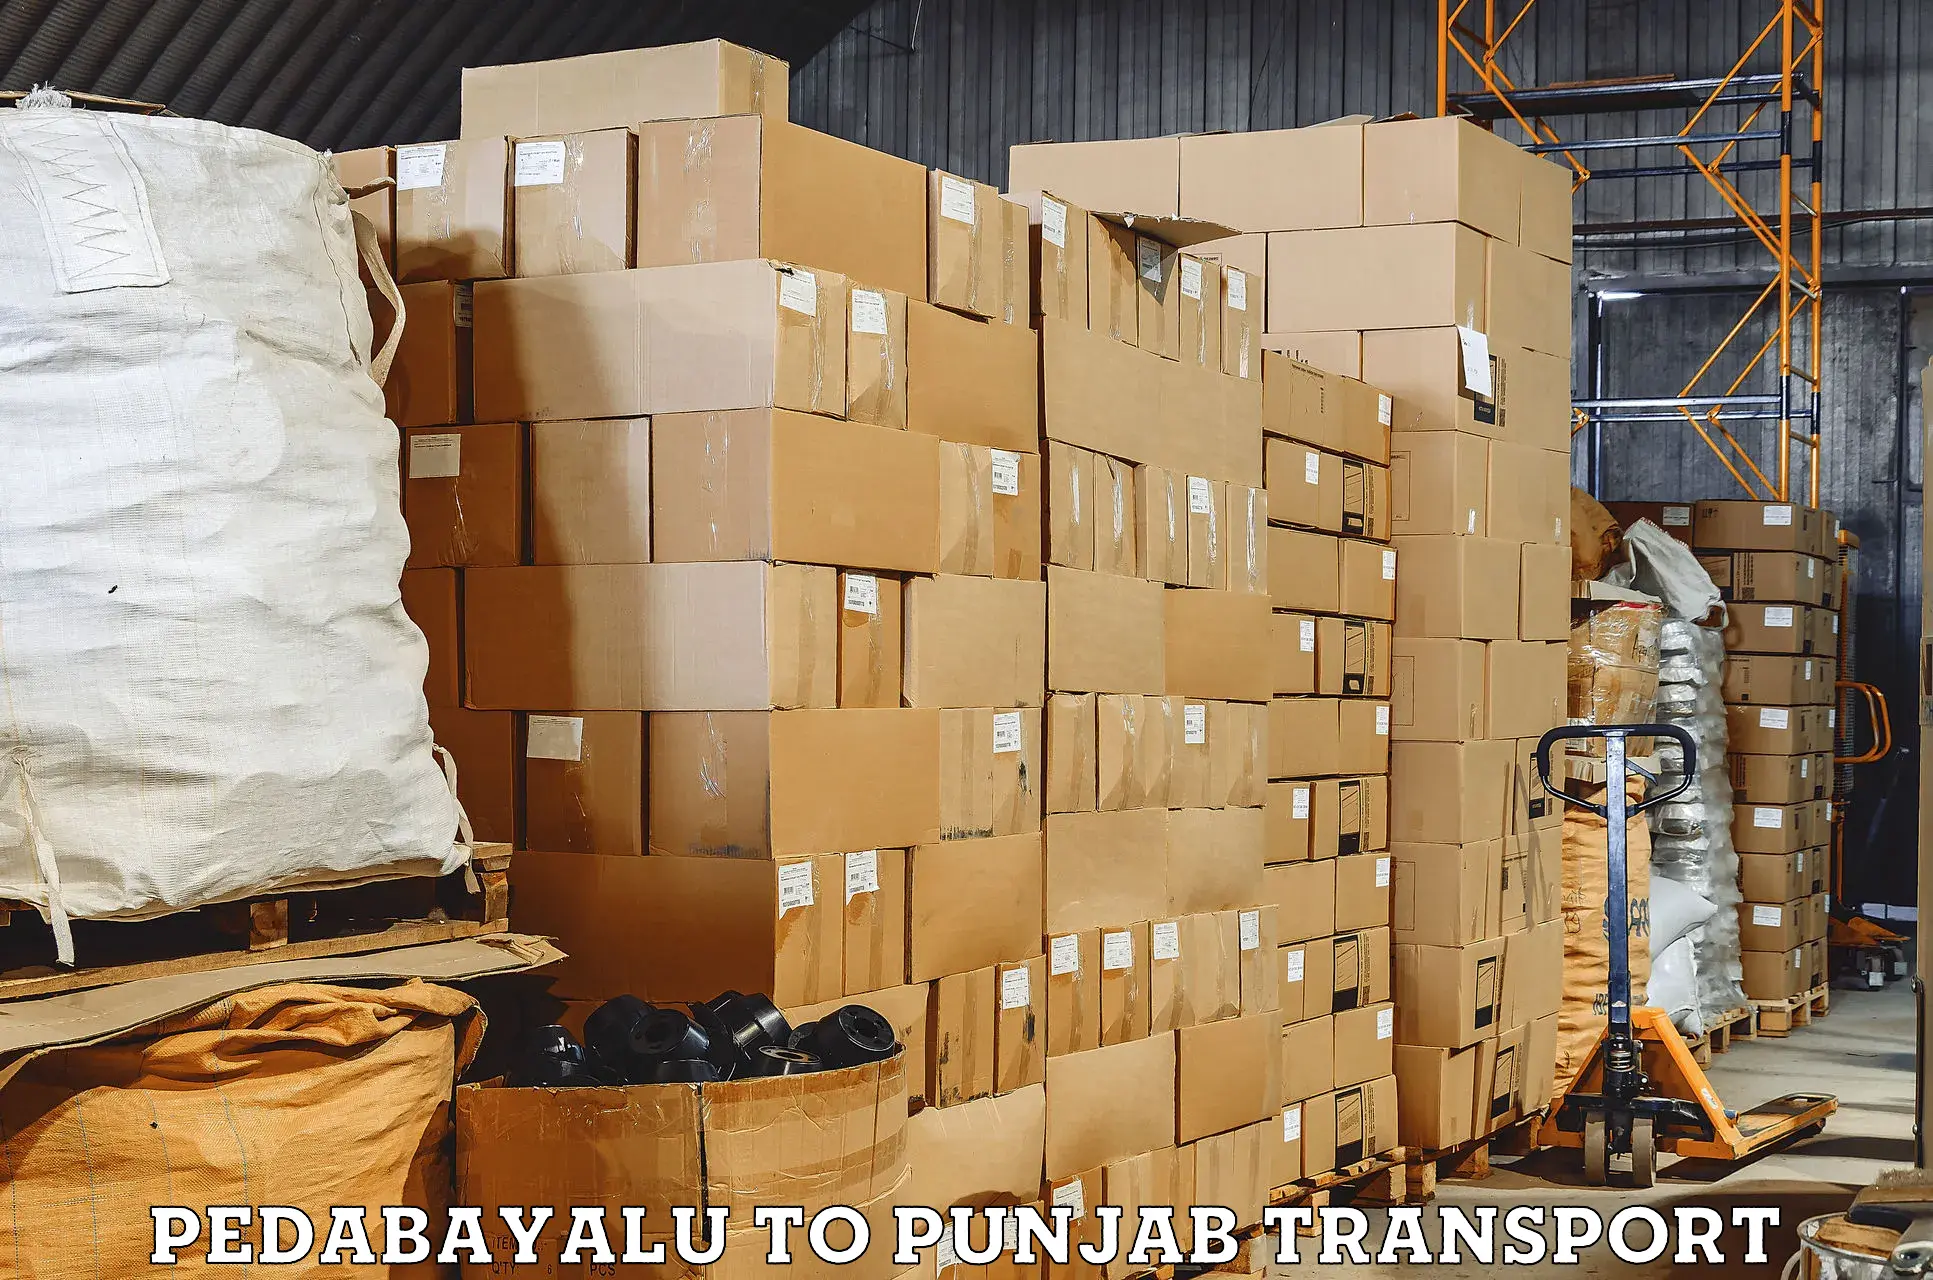 Parcel transport services Pedabayalu to Ajnala